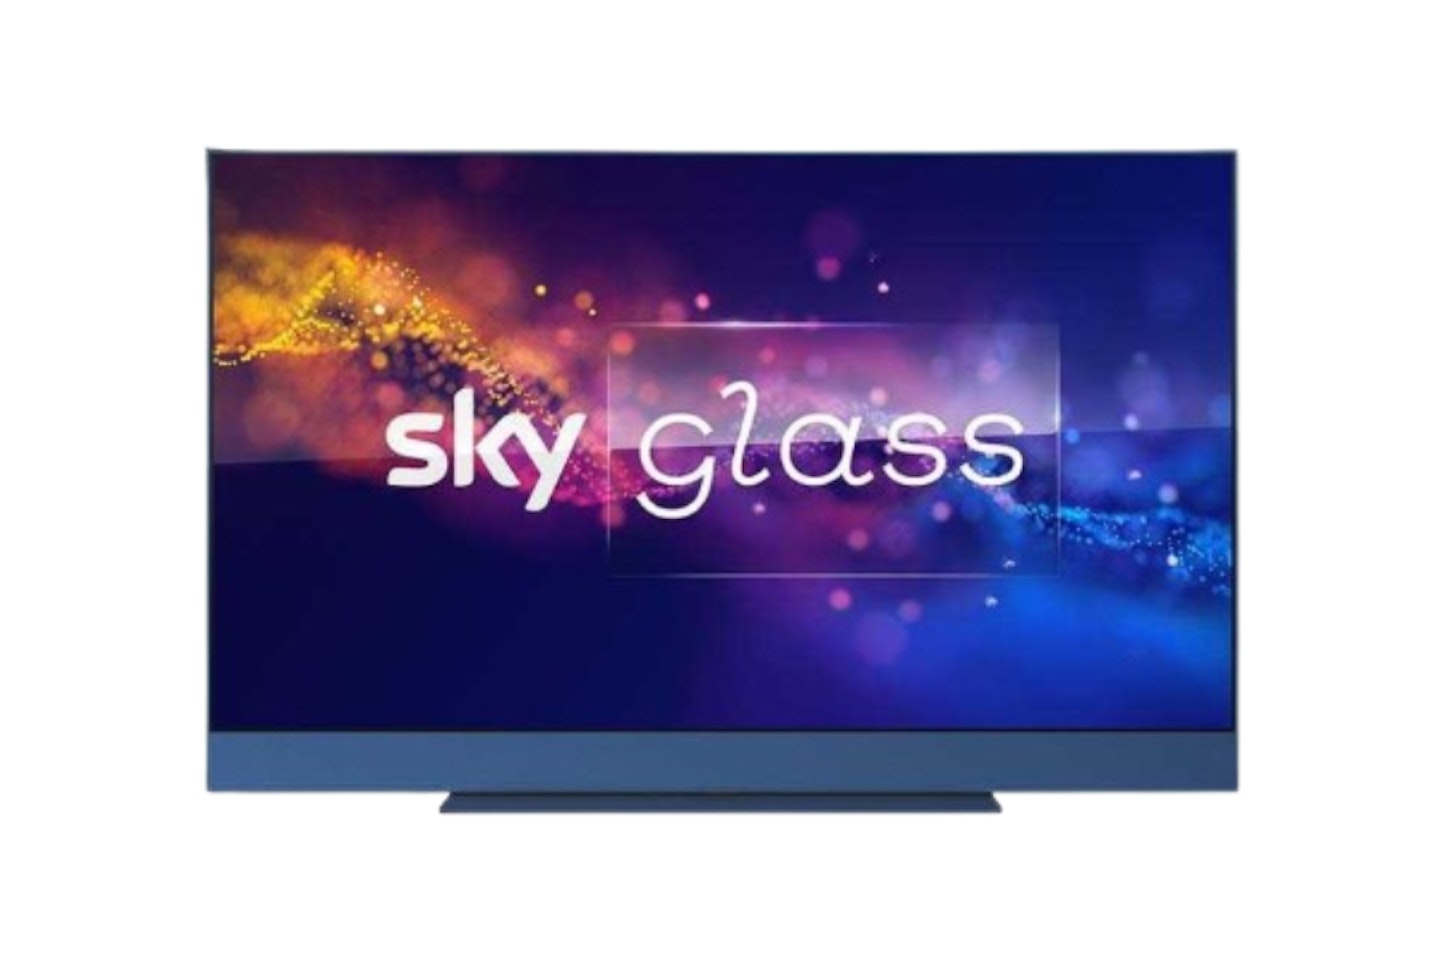 Sky Glass TV